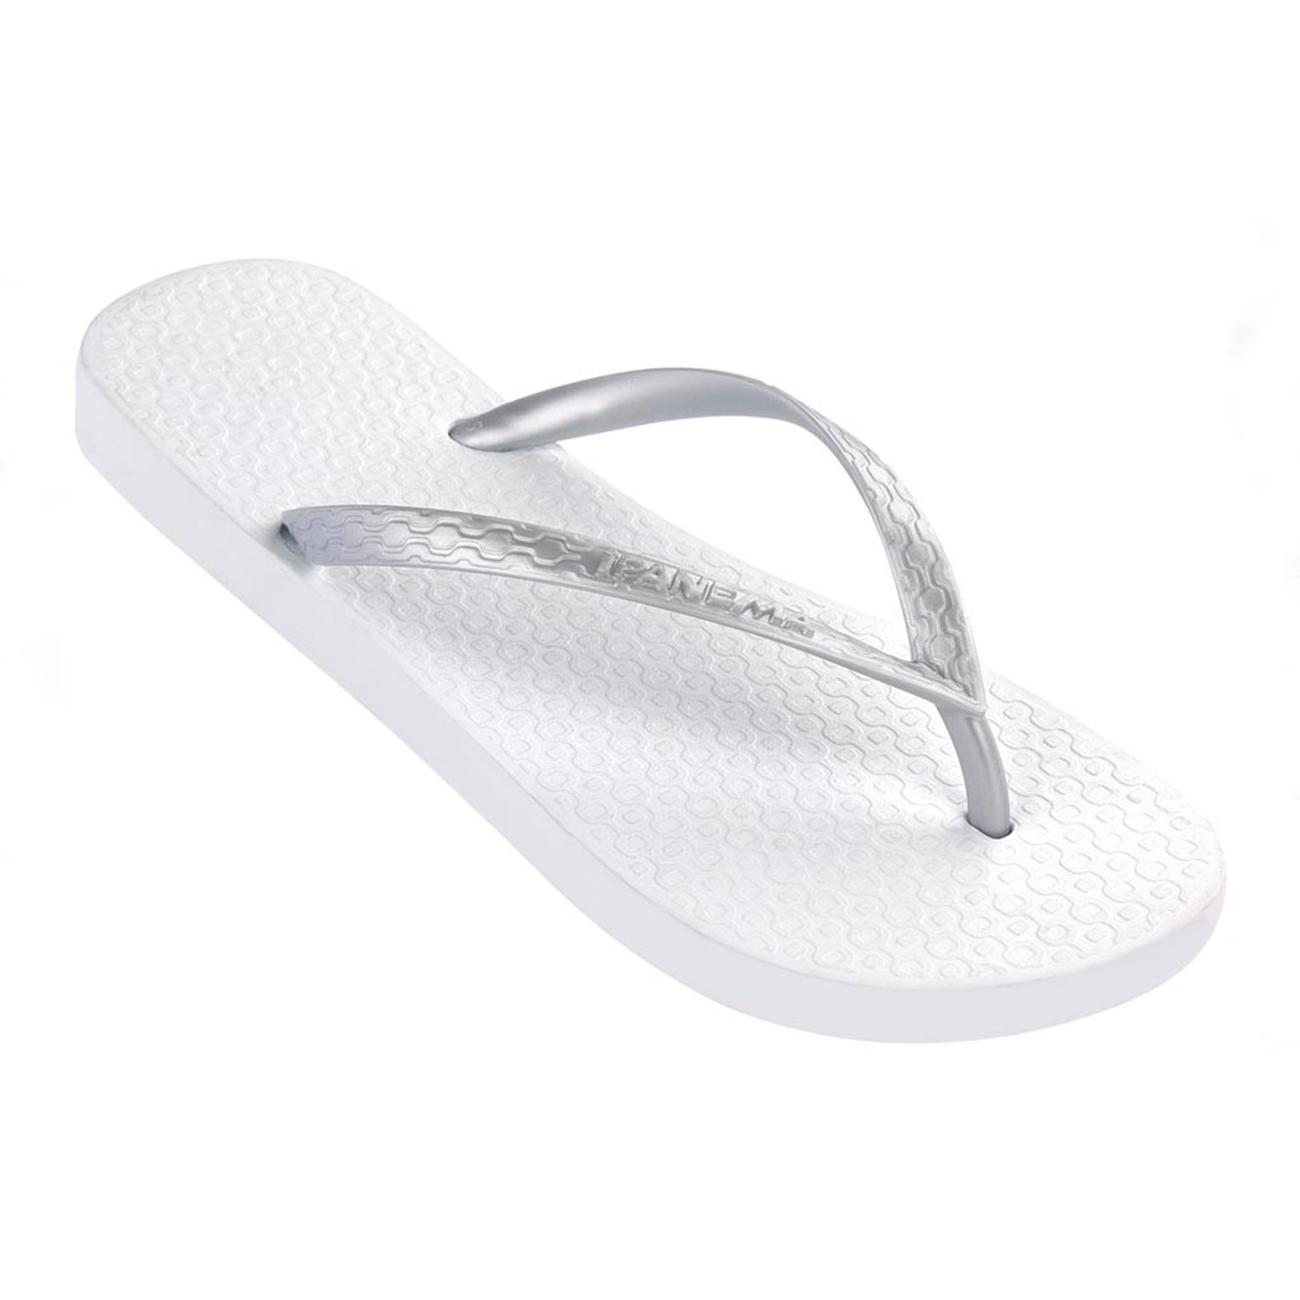 Ipanema Classic Slippers For Women, White